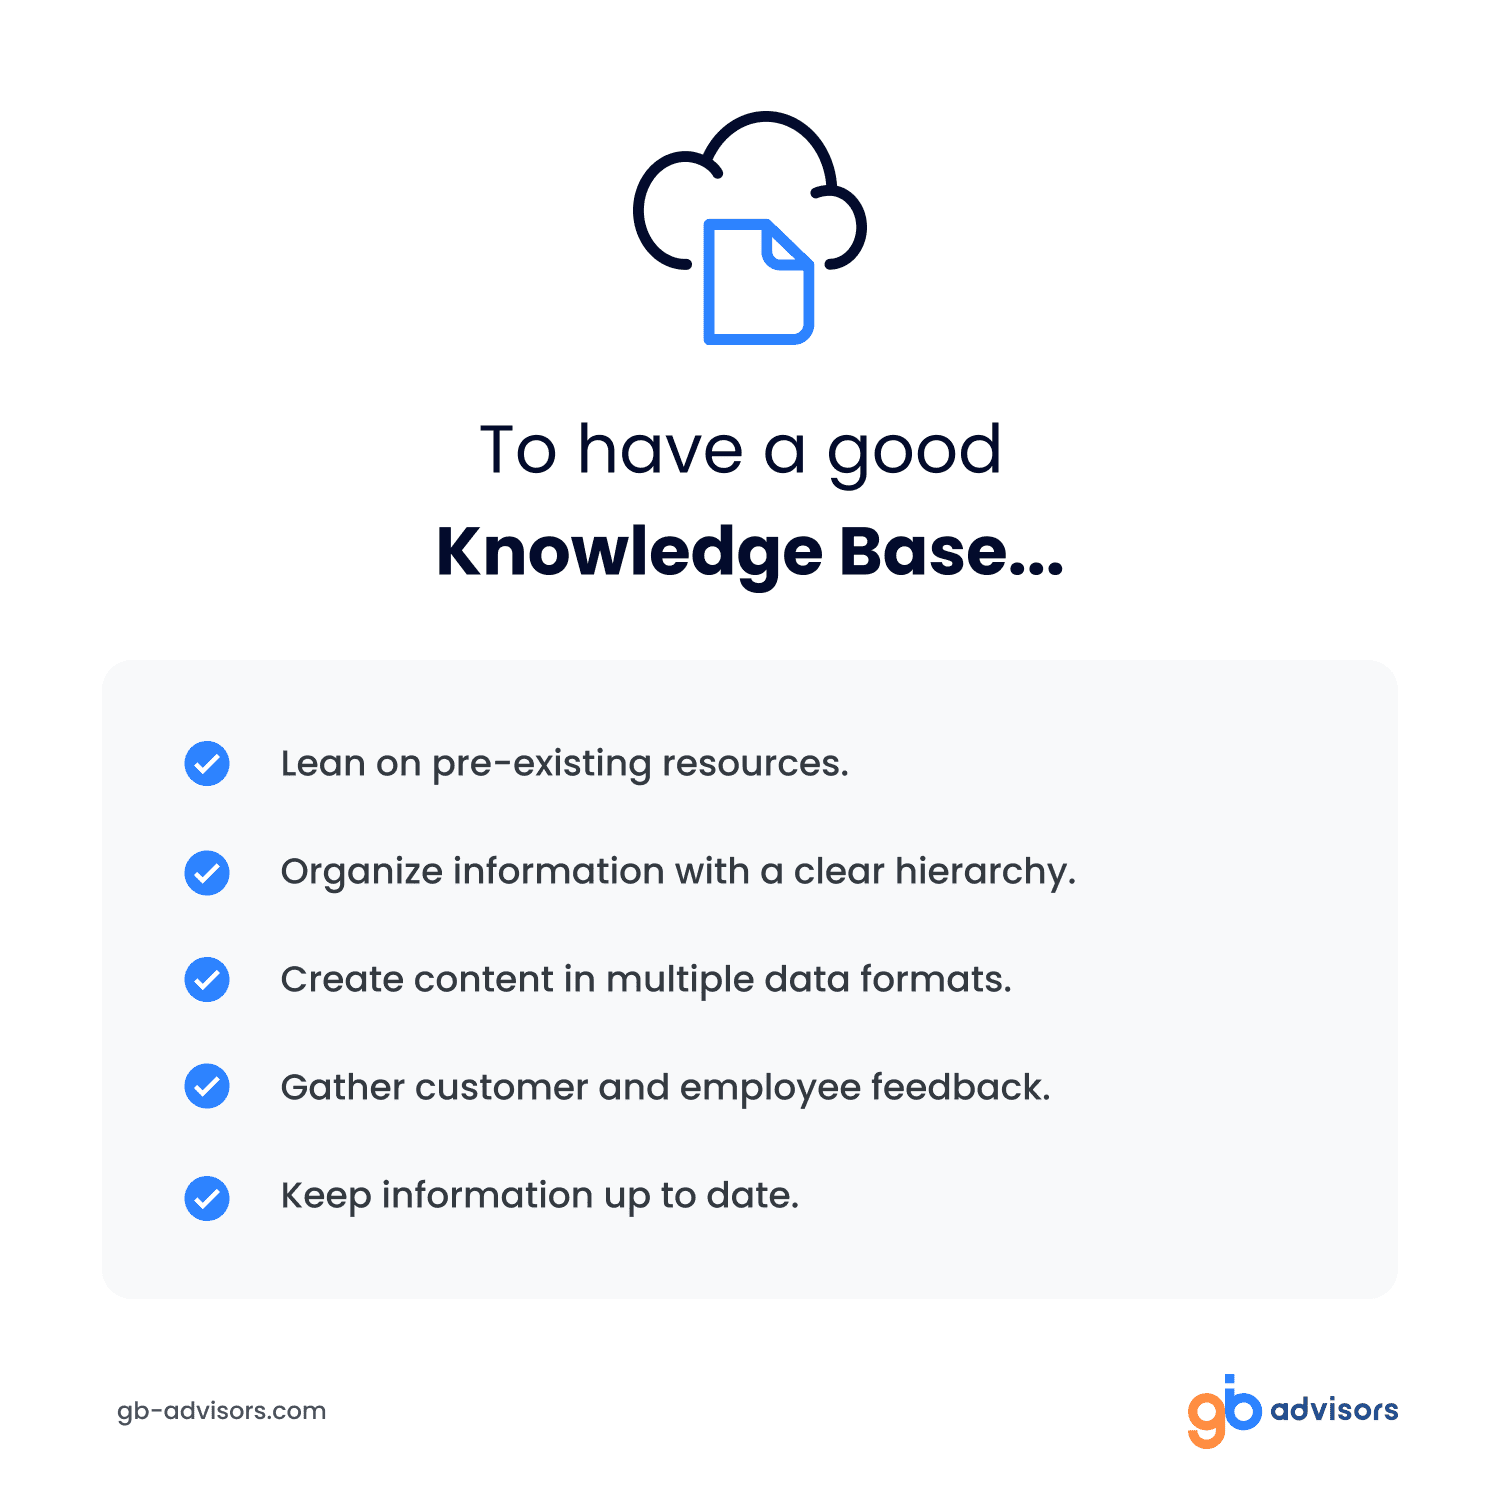 Optimize knowledge base